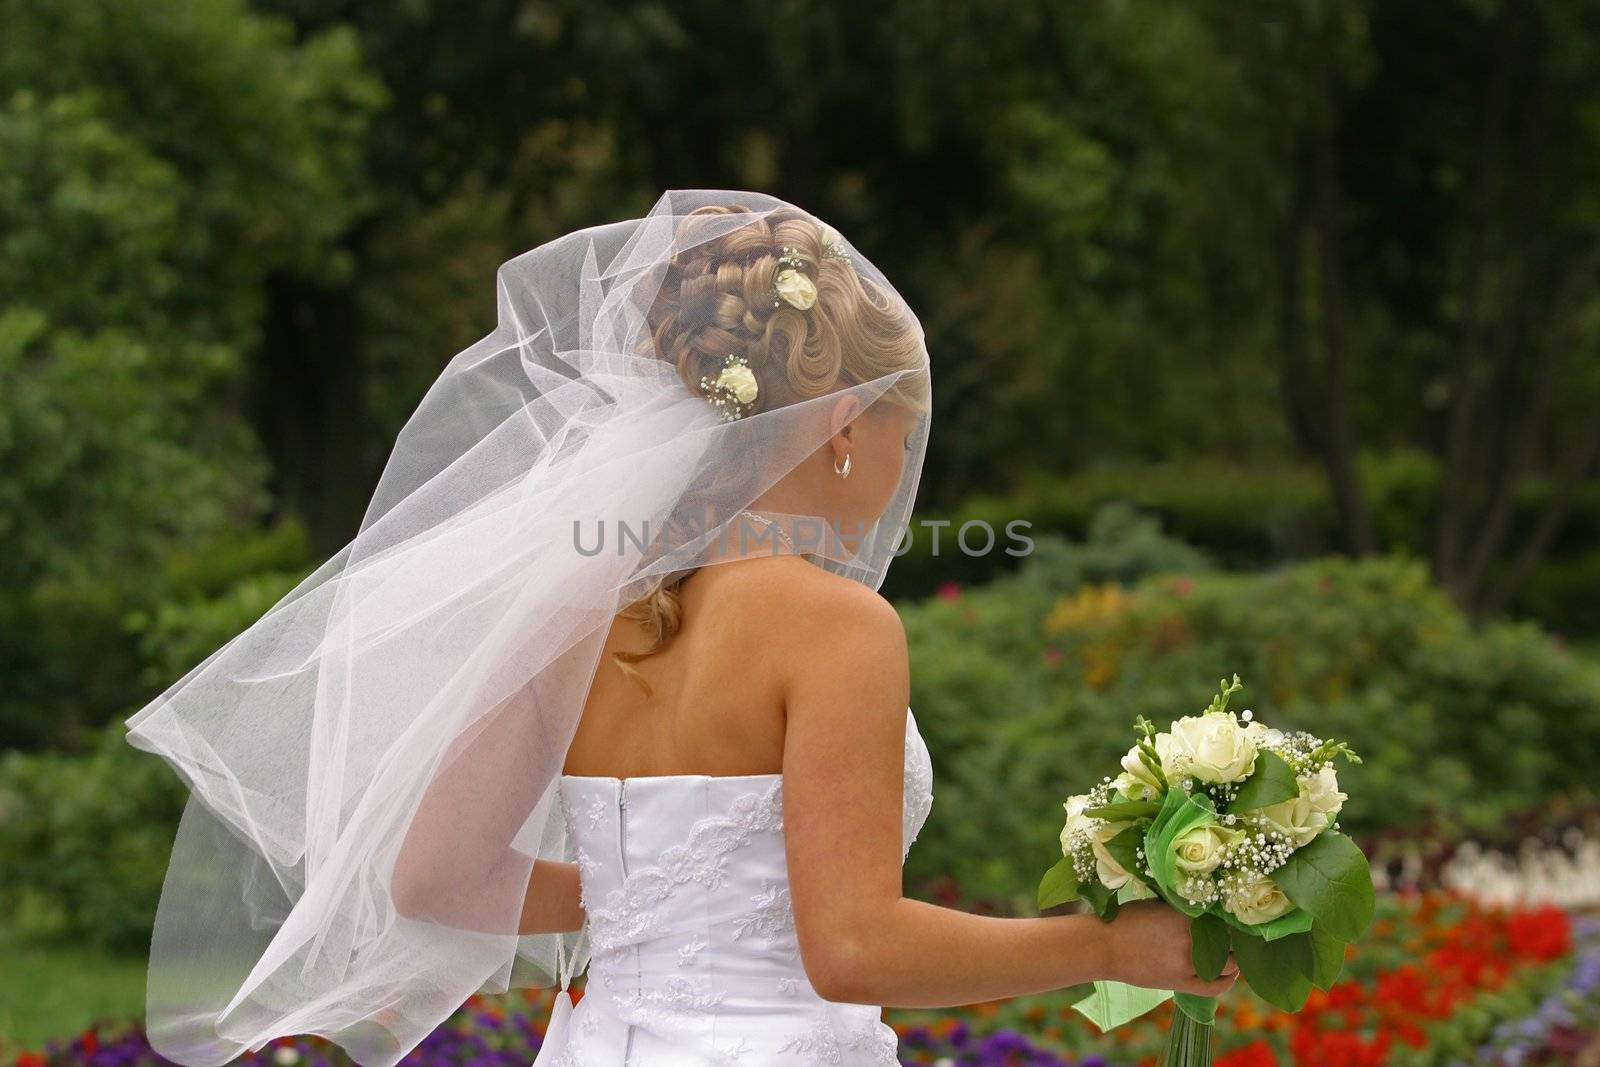 The bride walks in park